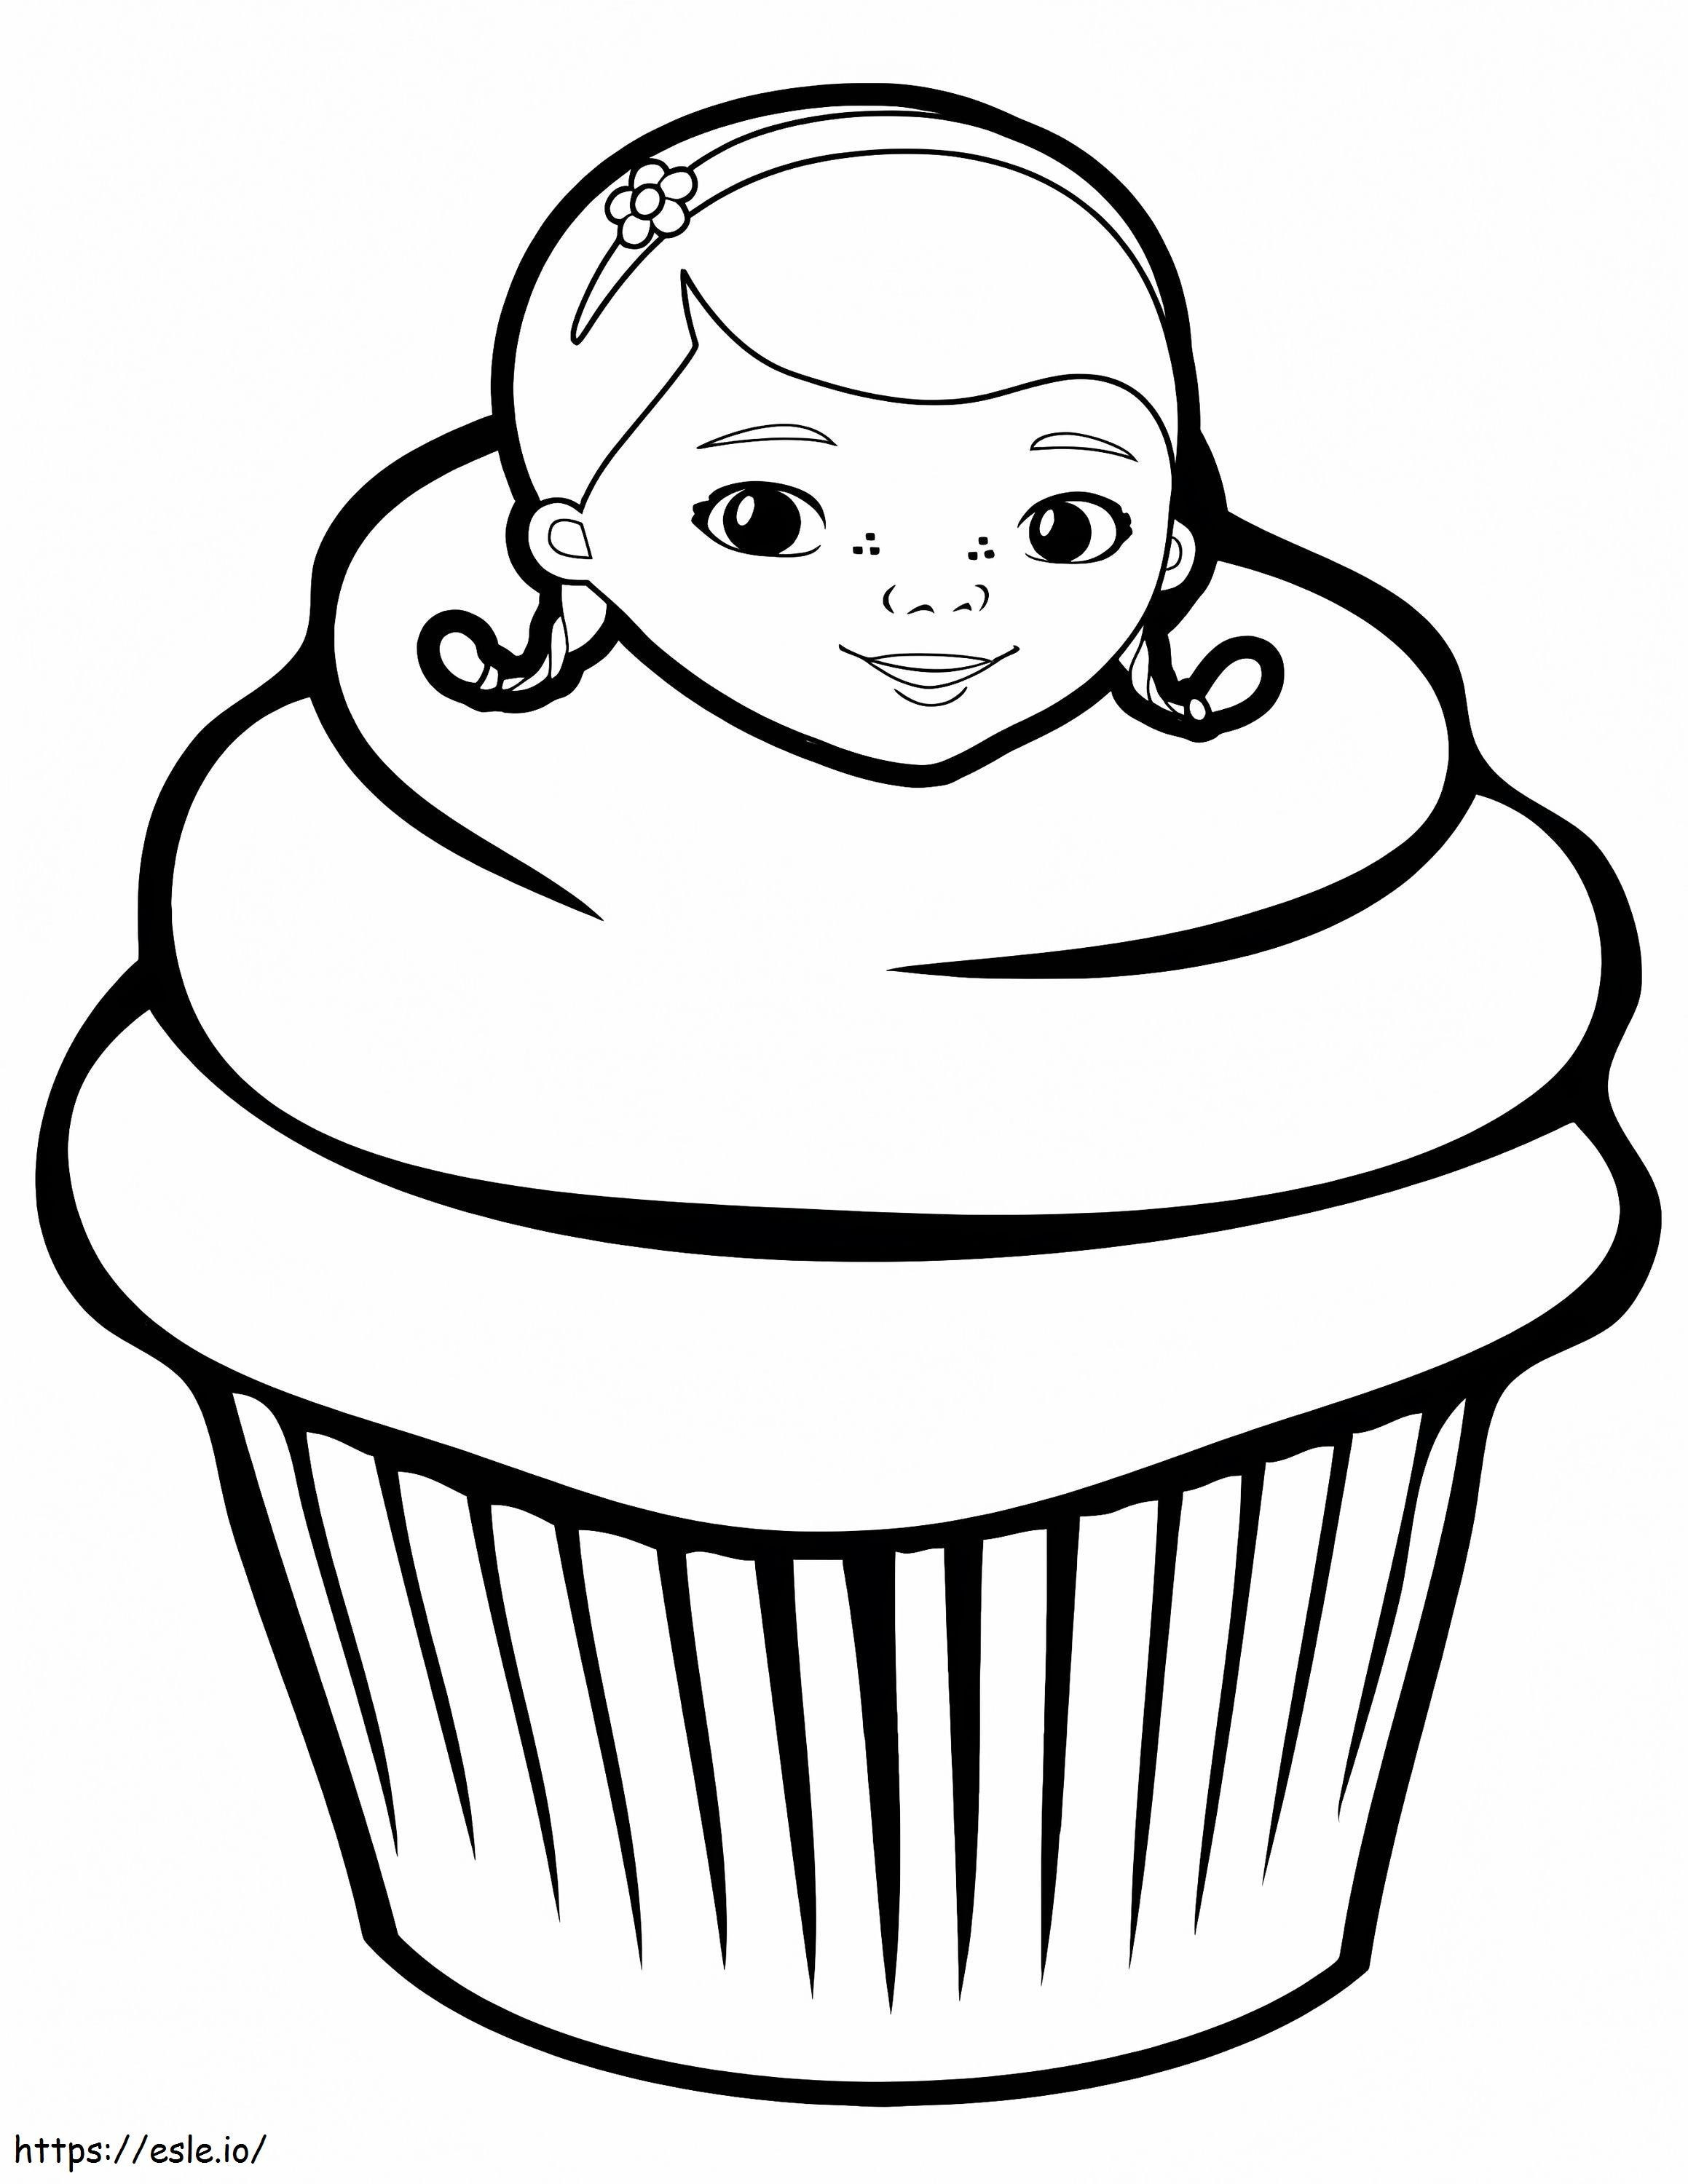 Doc McStuffins Cupcake coloring page